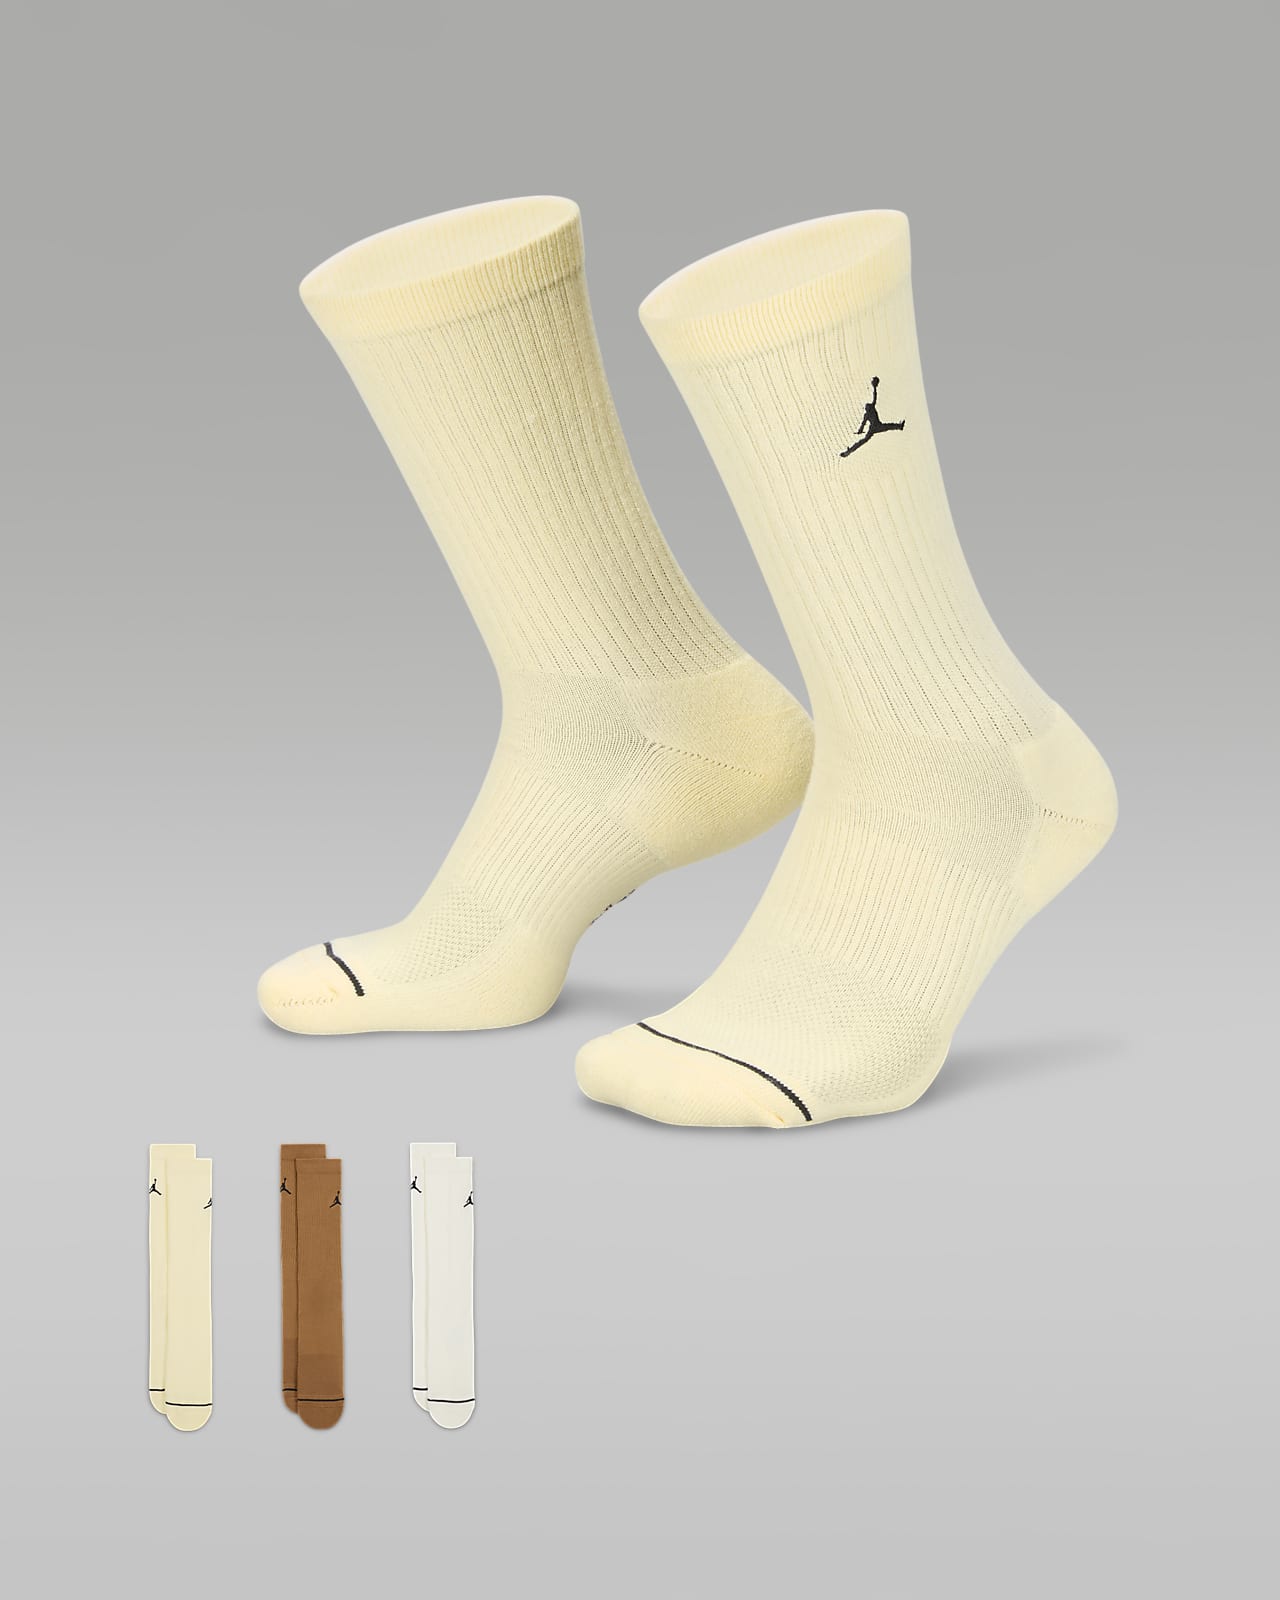 Středně vysoké ponožky Jordan Everyday (3 páry)